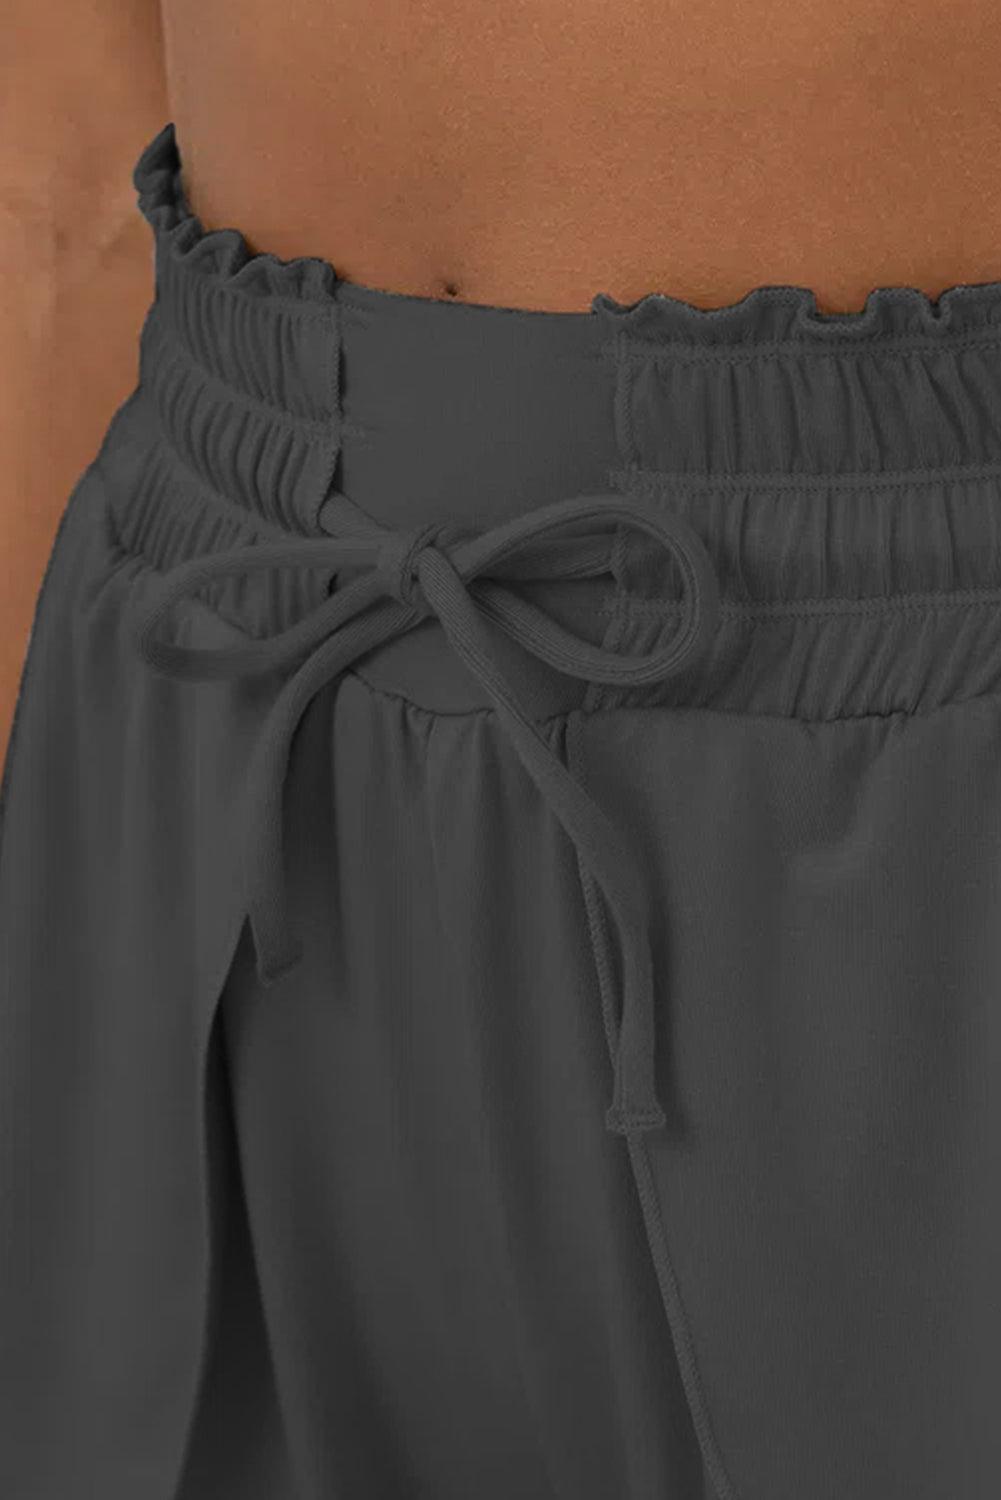 Dark Grey Frilly High Waist Petal Wrap Swim Shorts - L & M Kee, LLC